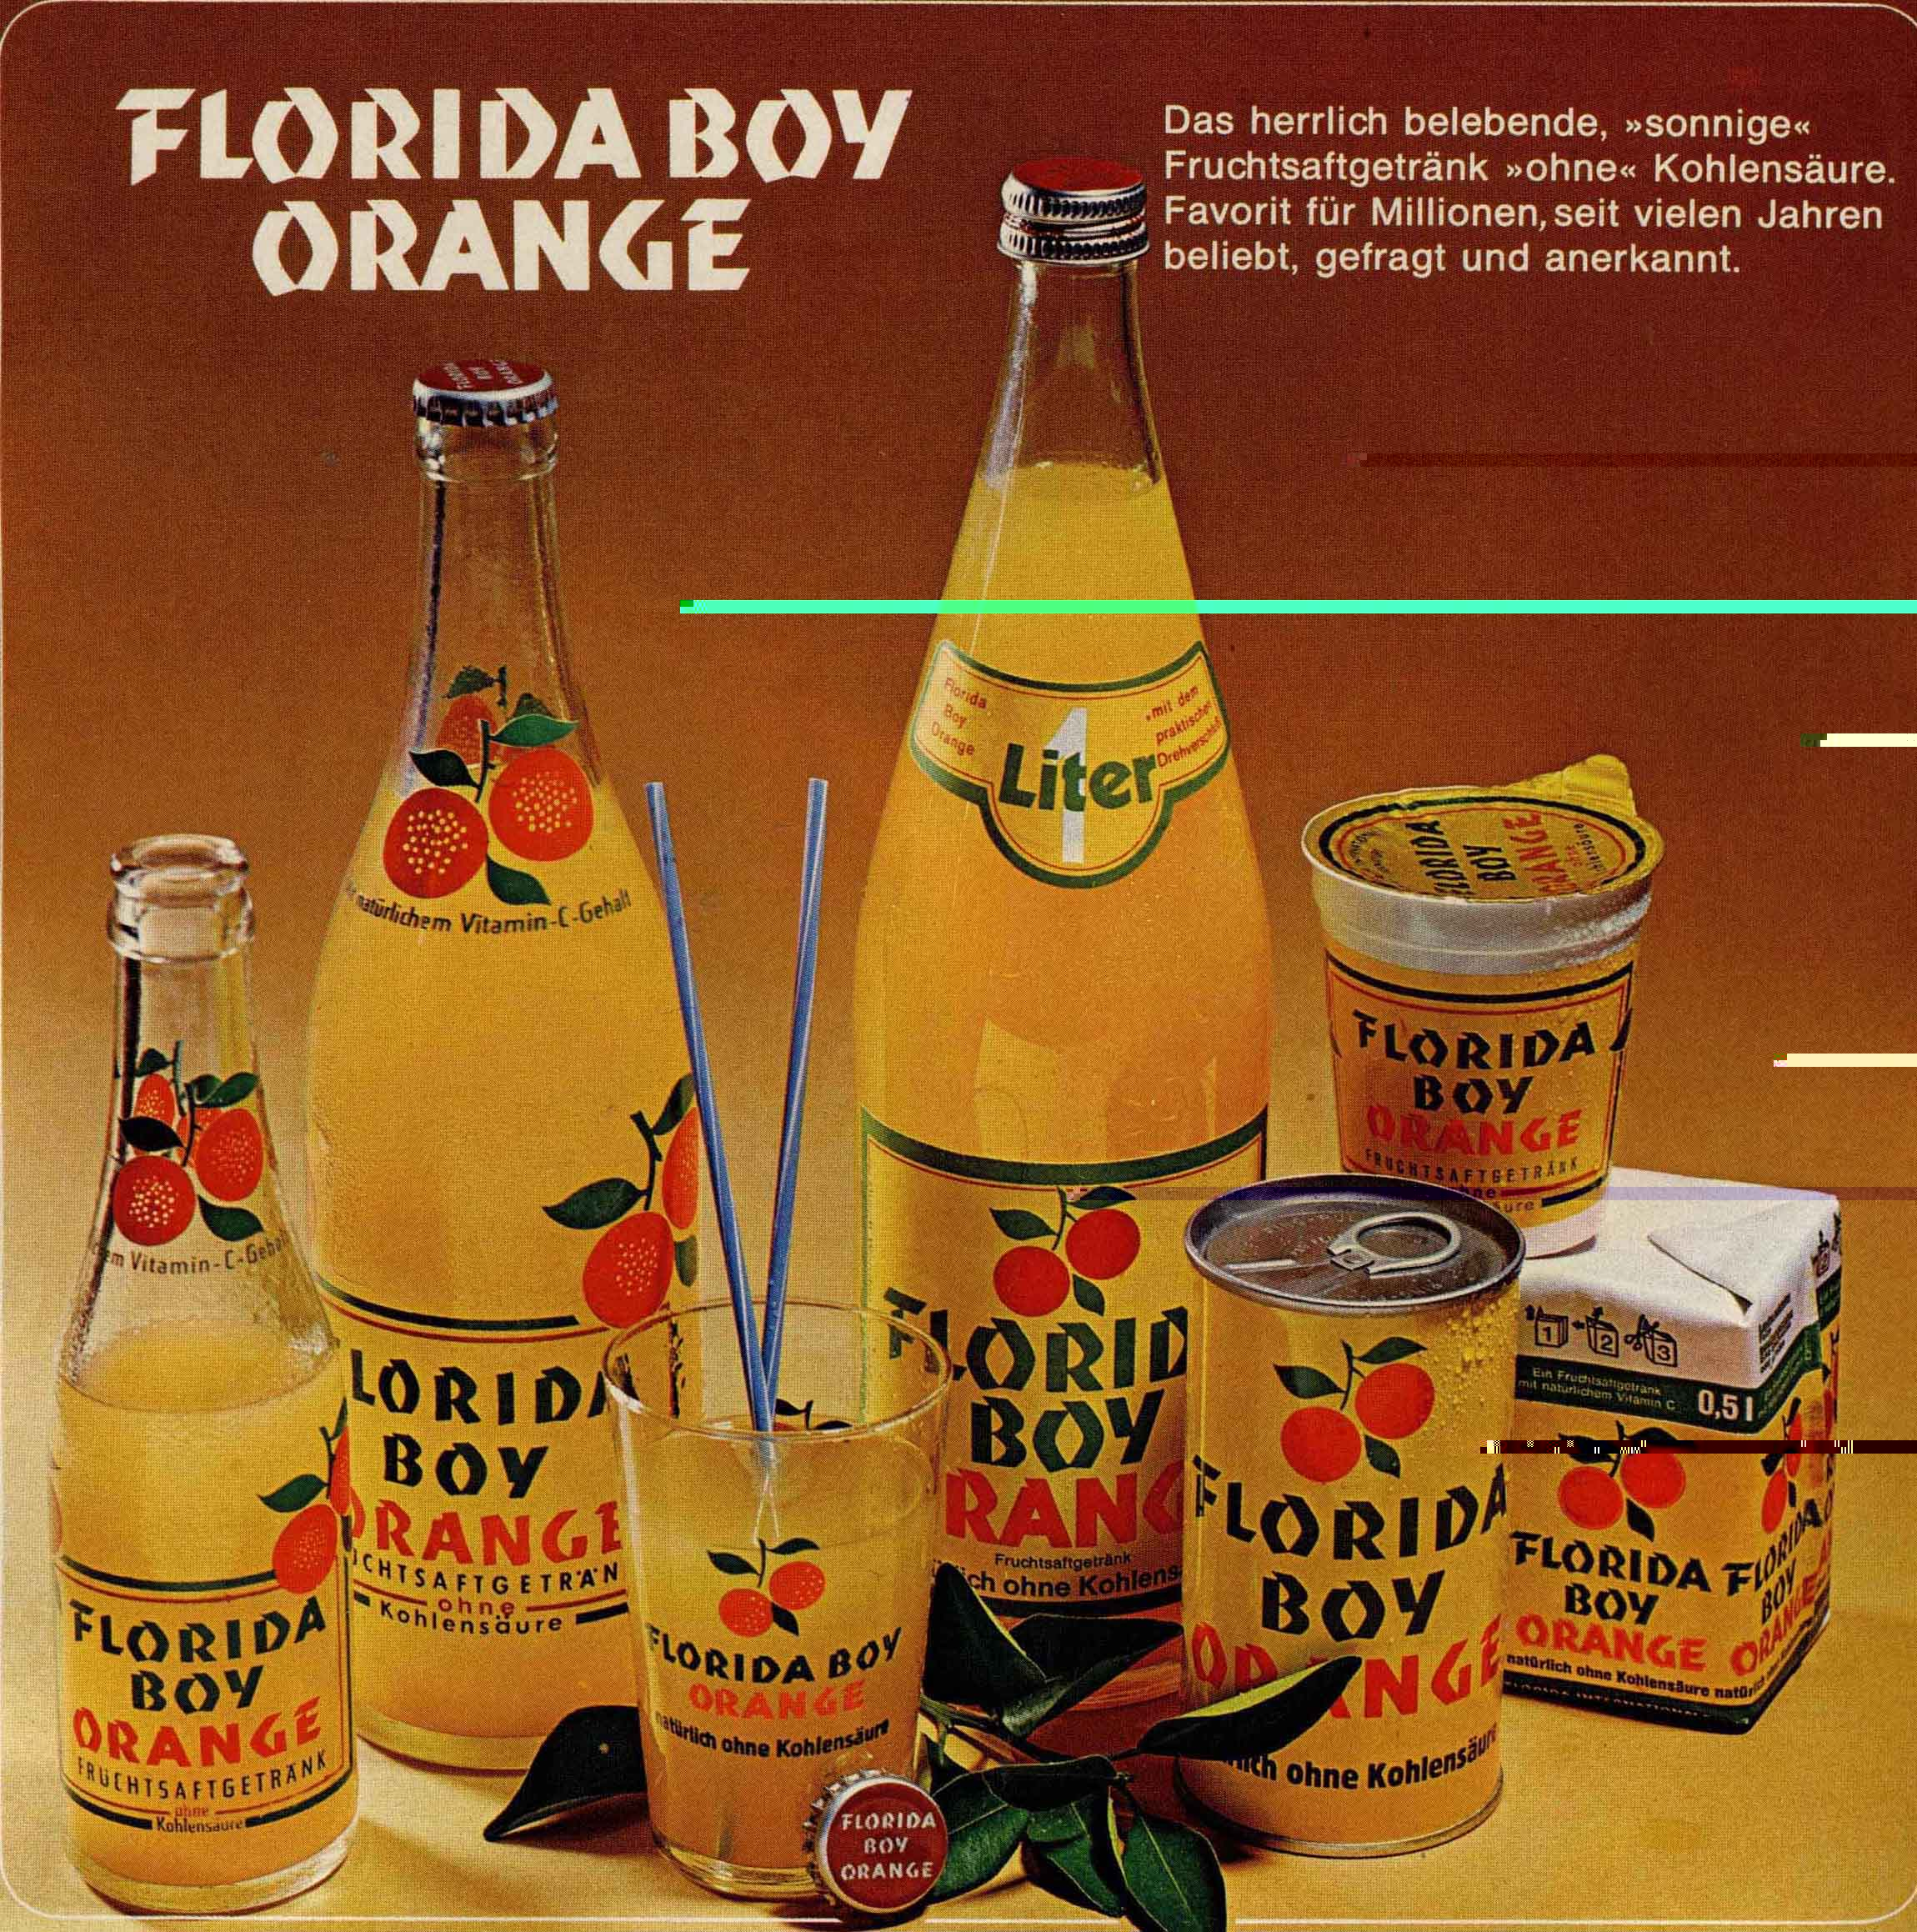 Florida_Boy_Orange_Produktverpackungen.JPG